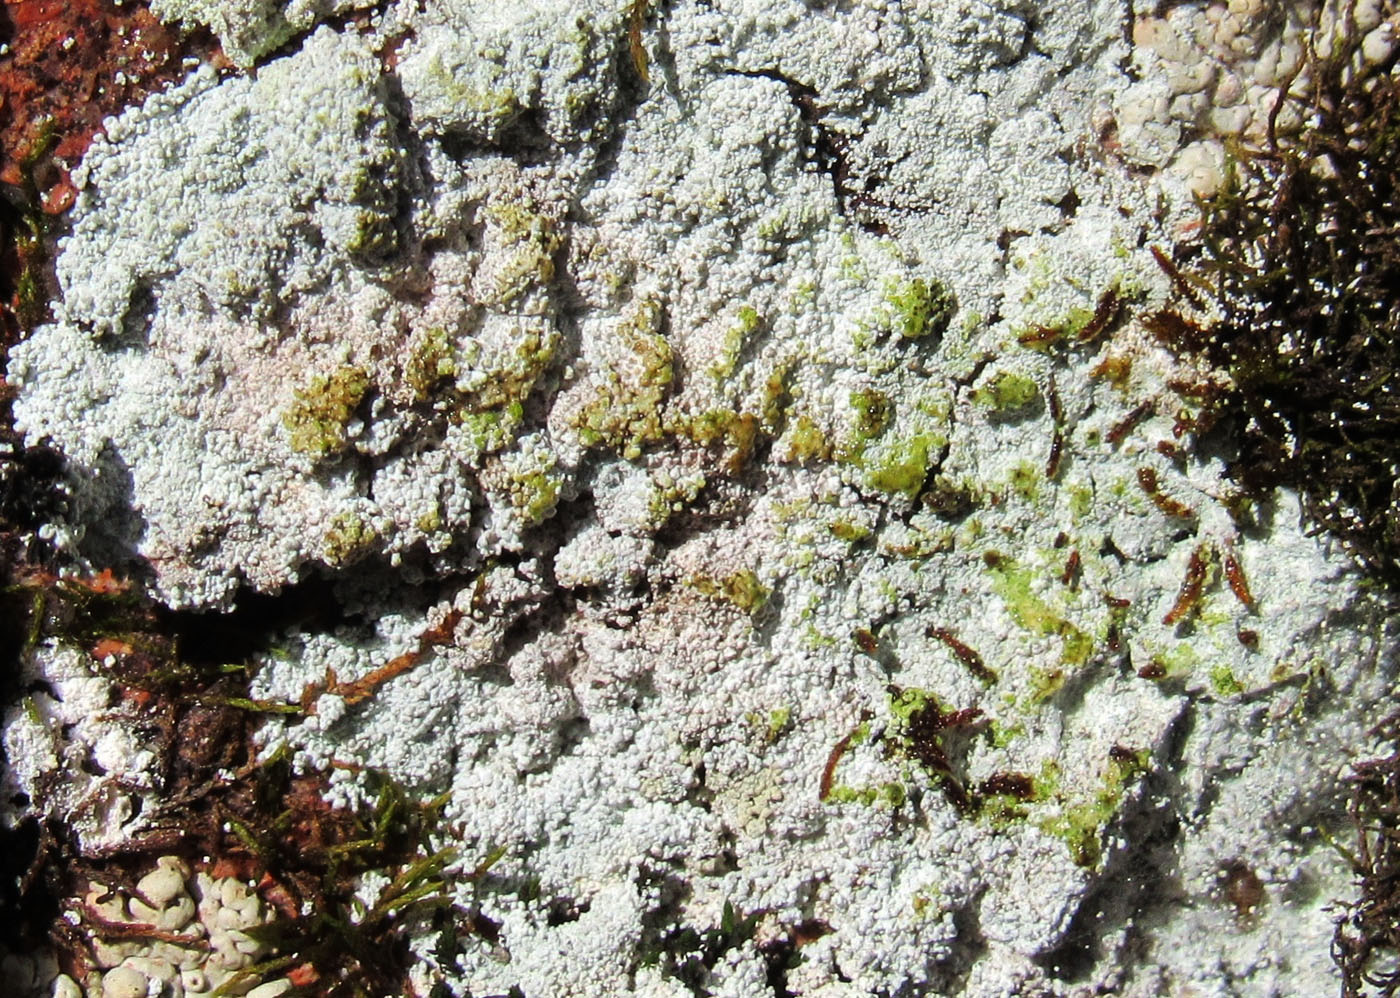 Image of genus Lepraria specimen.